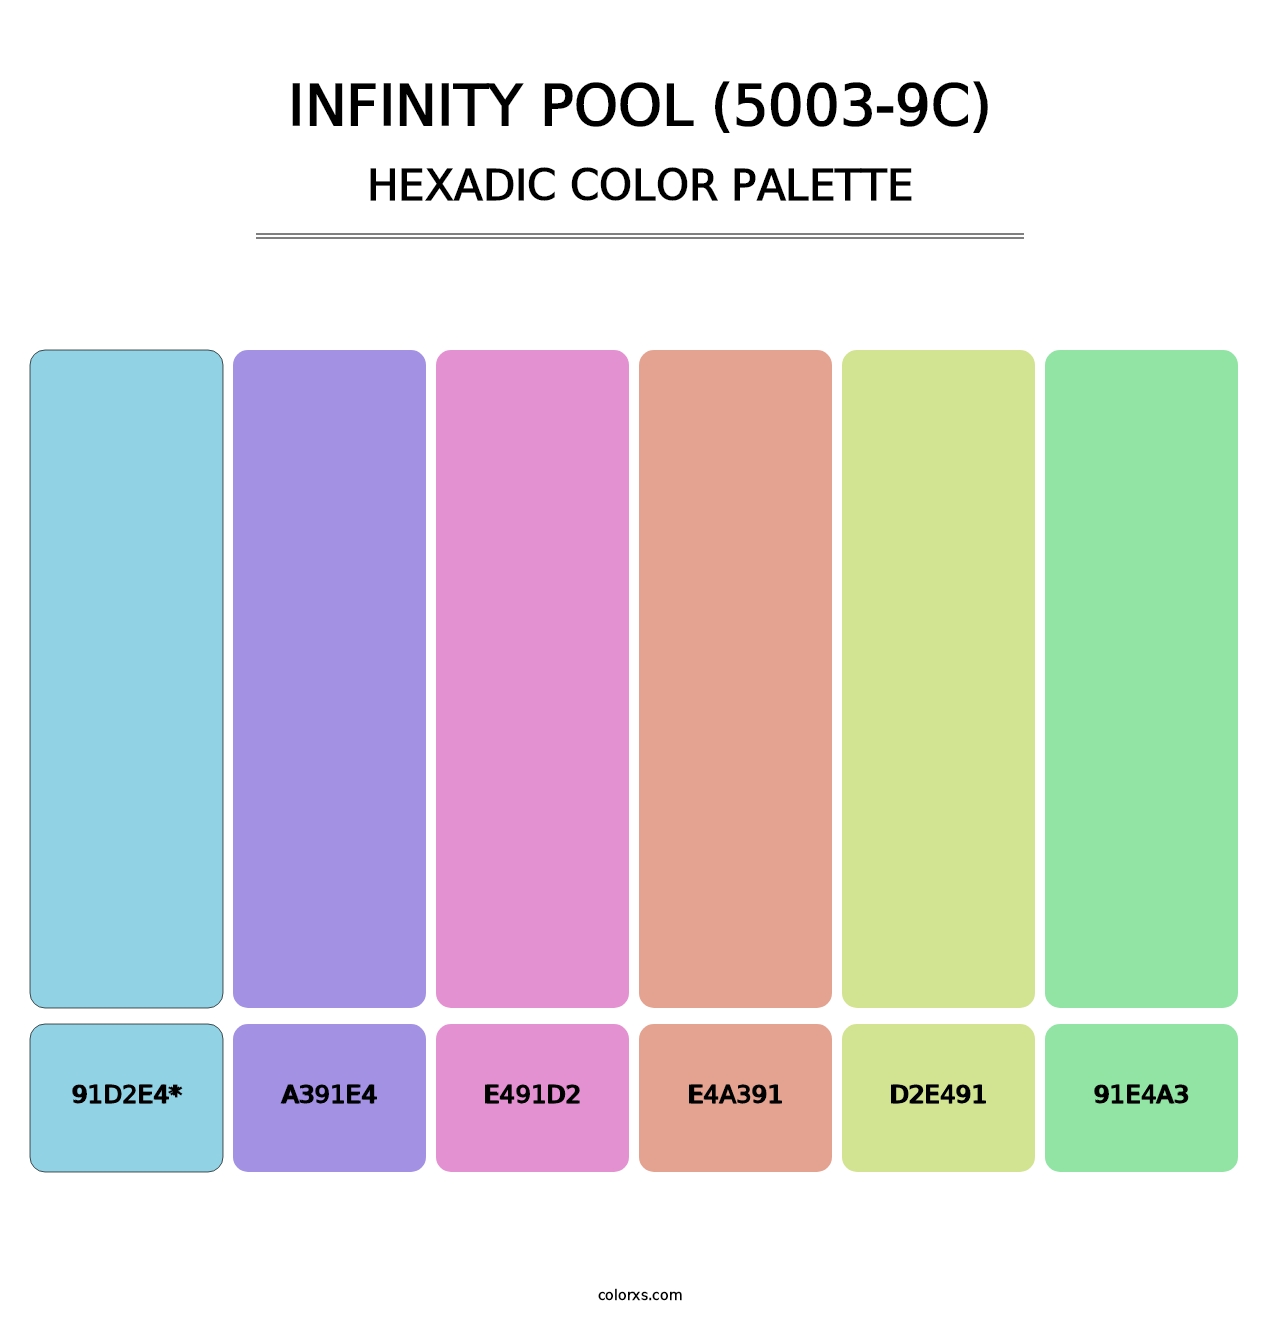 Infinity Pool (5003-9C) - Hexadic Color Palette